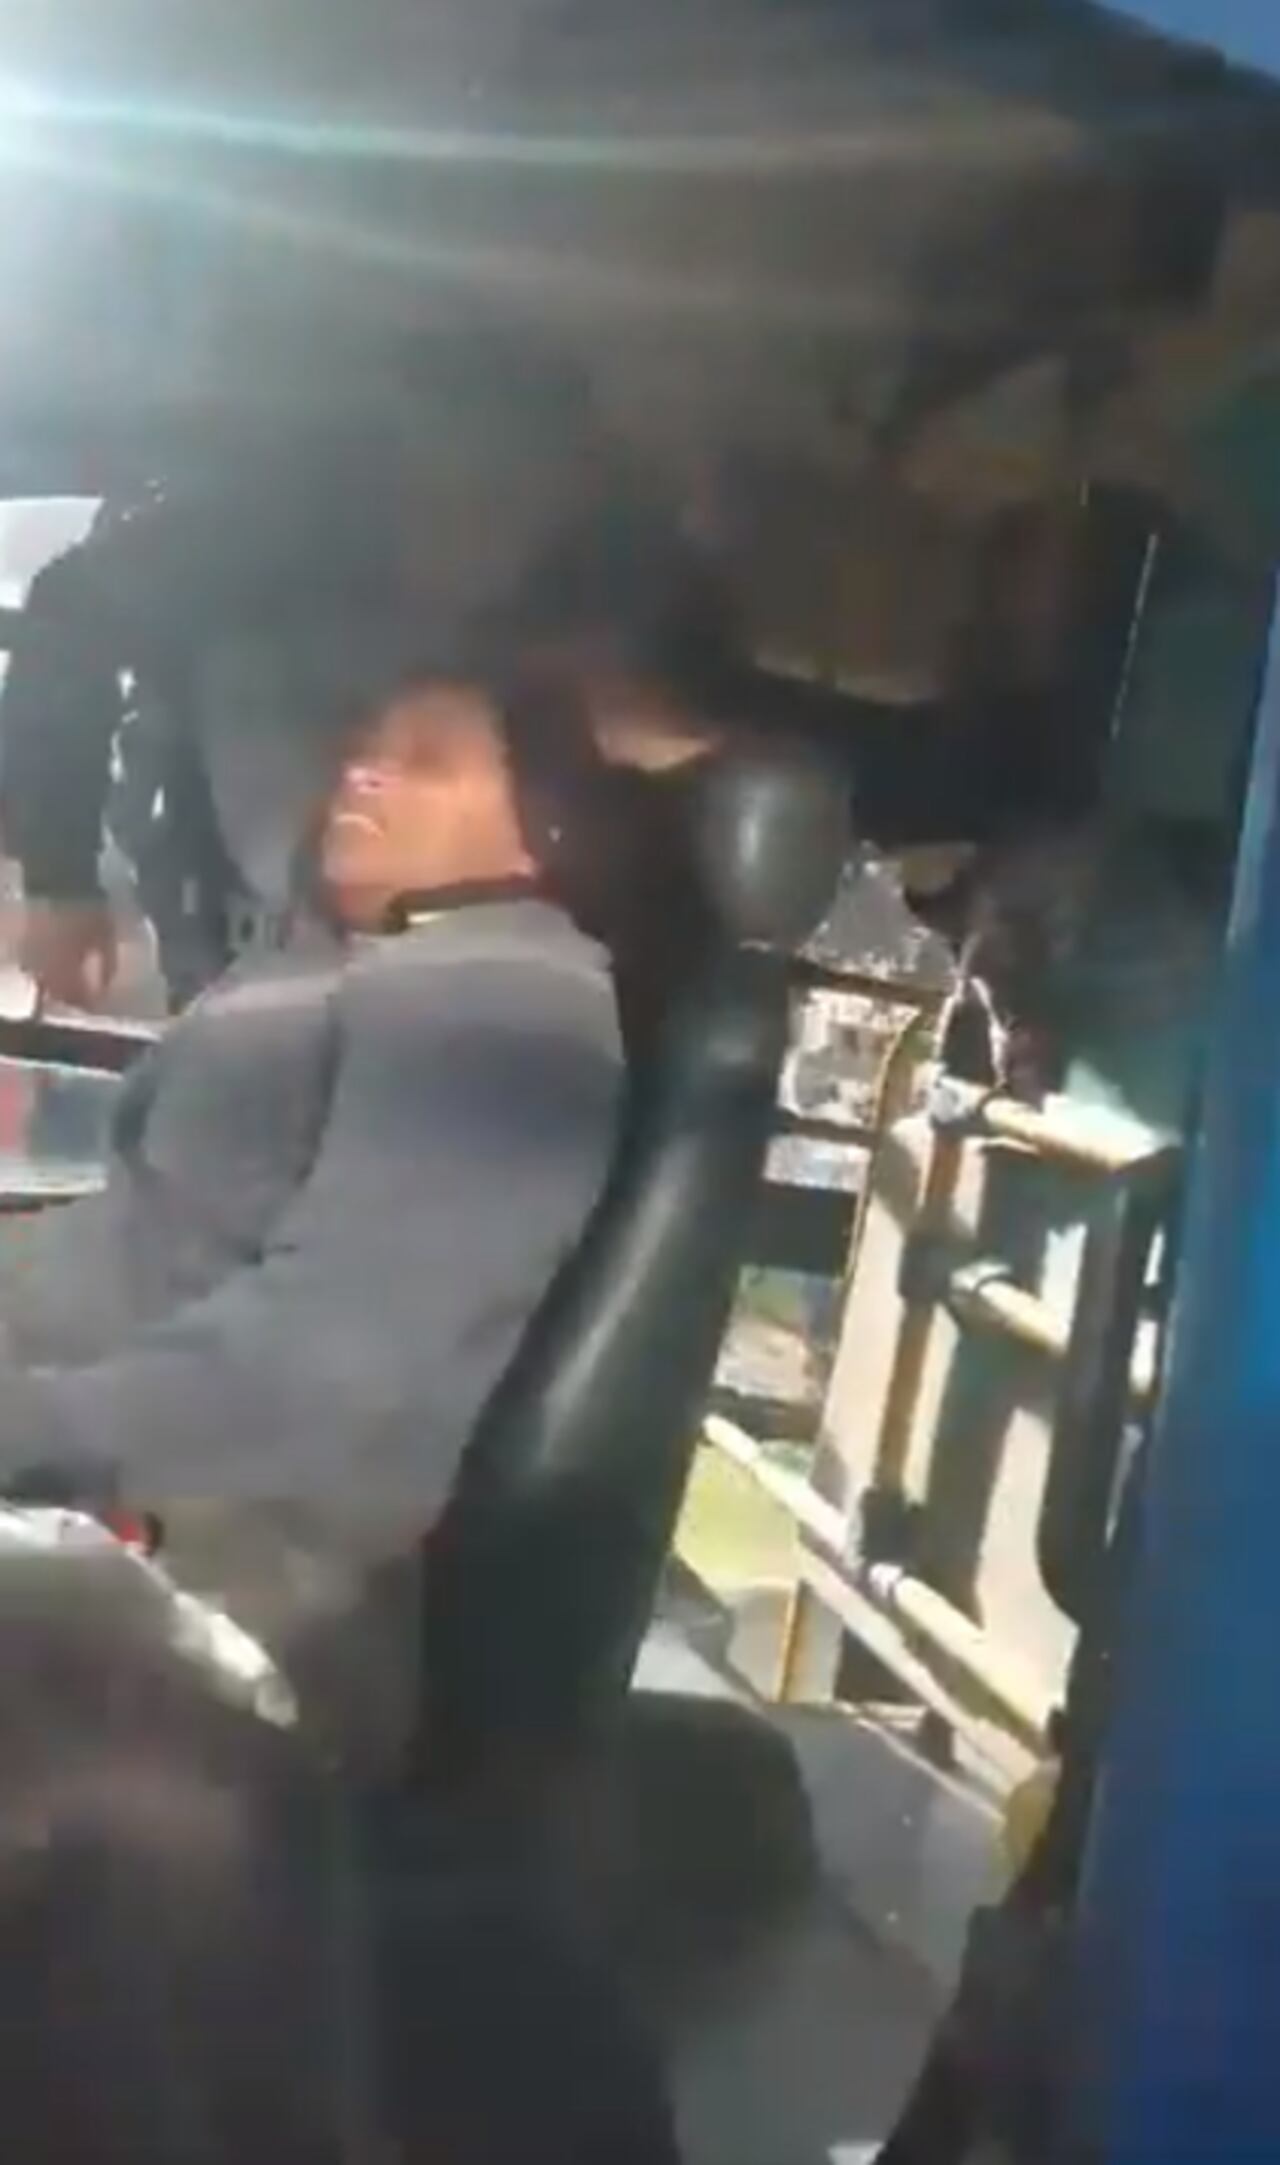 Una de las pasajeras evitó que la mujer arrancara el bus.